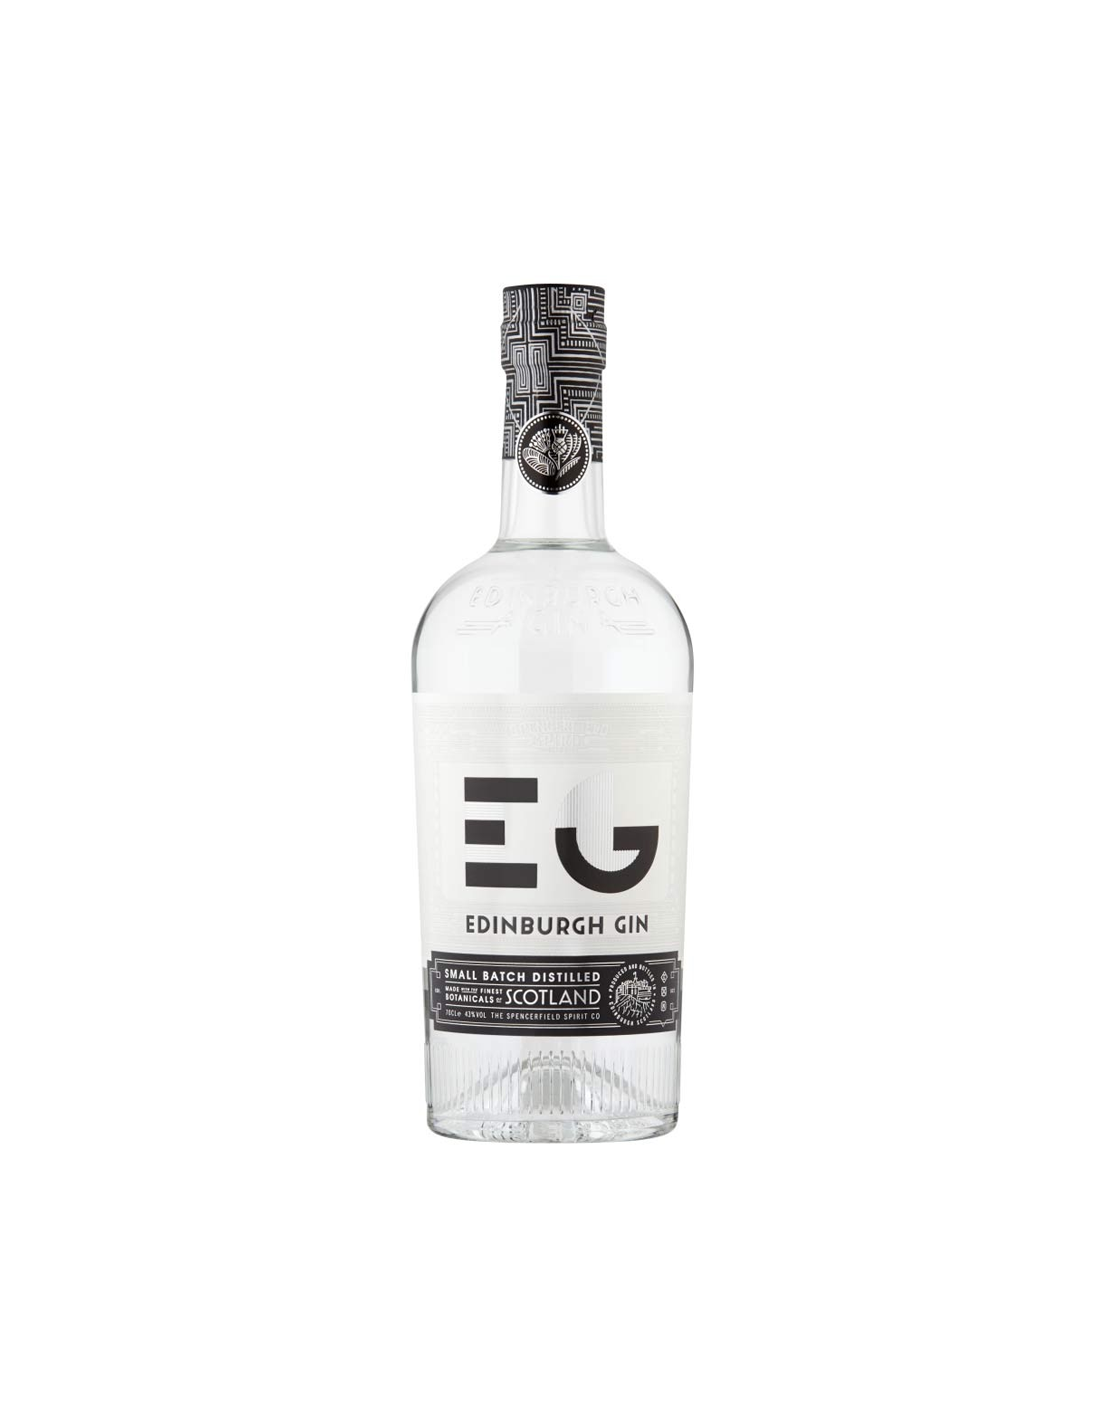 Gin Edinburgh, 43% alc., 0.7L, Scotia alcooldiscount.ro